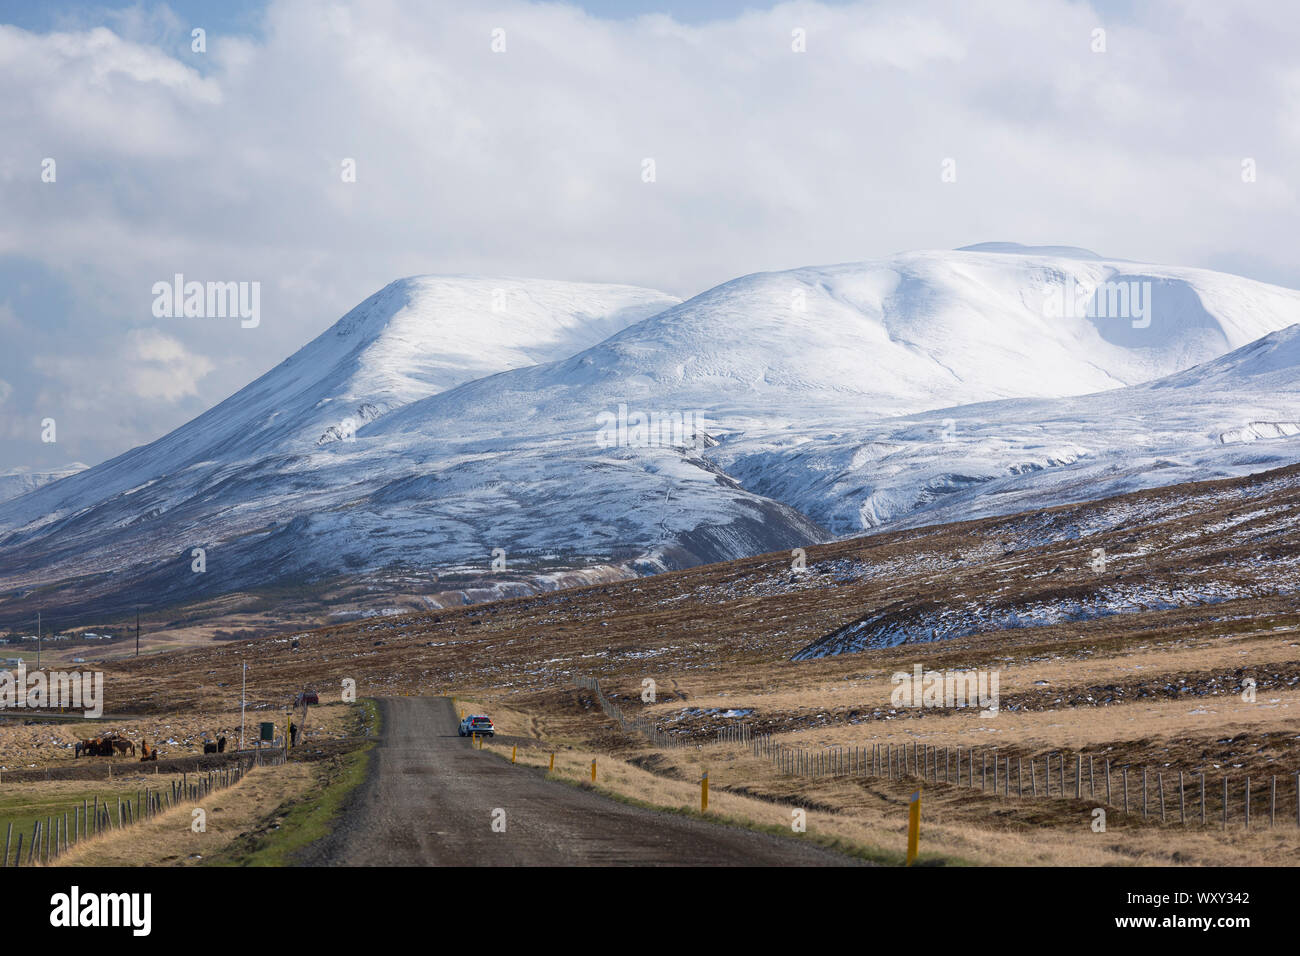 SAUDARKROKUR, ISLANDE - chemin de terre et paysage de montagne couverte de neige dans le nord de l'Islande. Banque D'Images